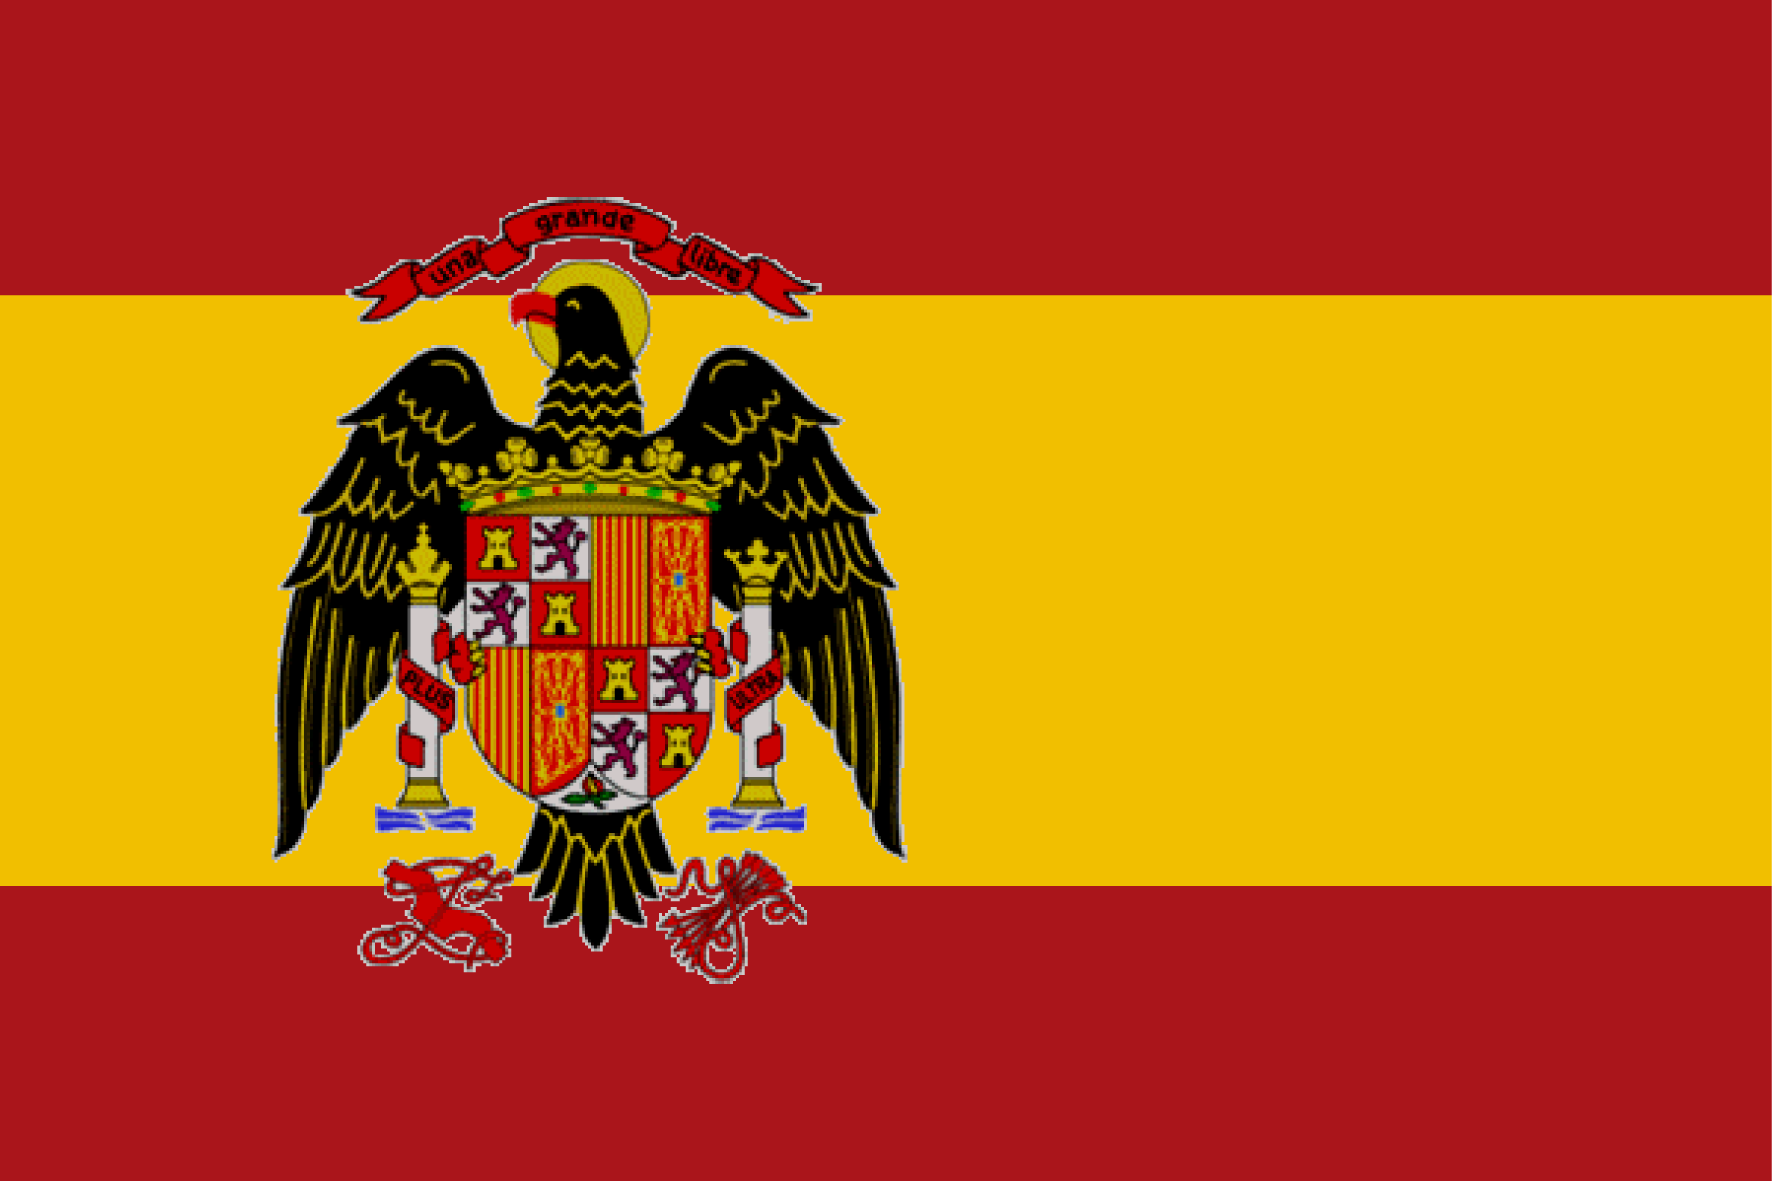 L’original iniciativa d’una tuitaire per tapar una bandera franquista